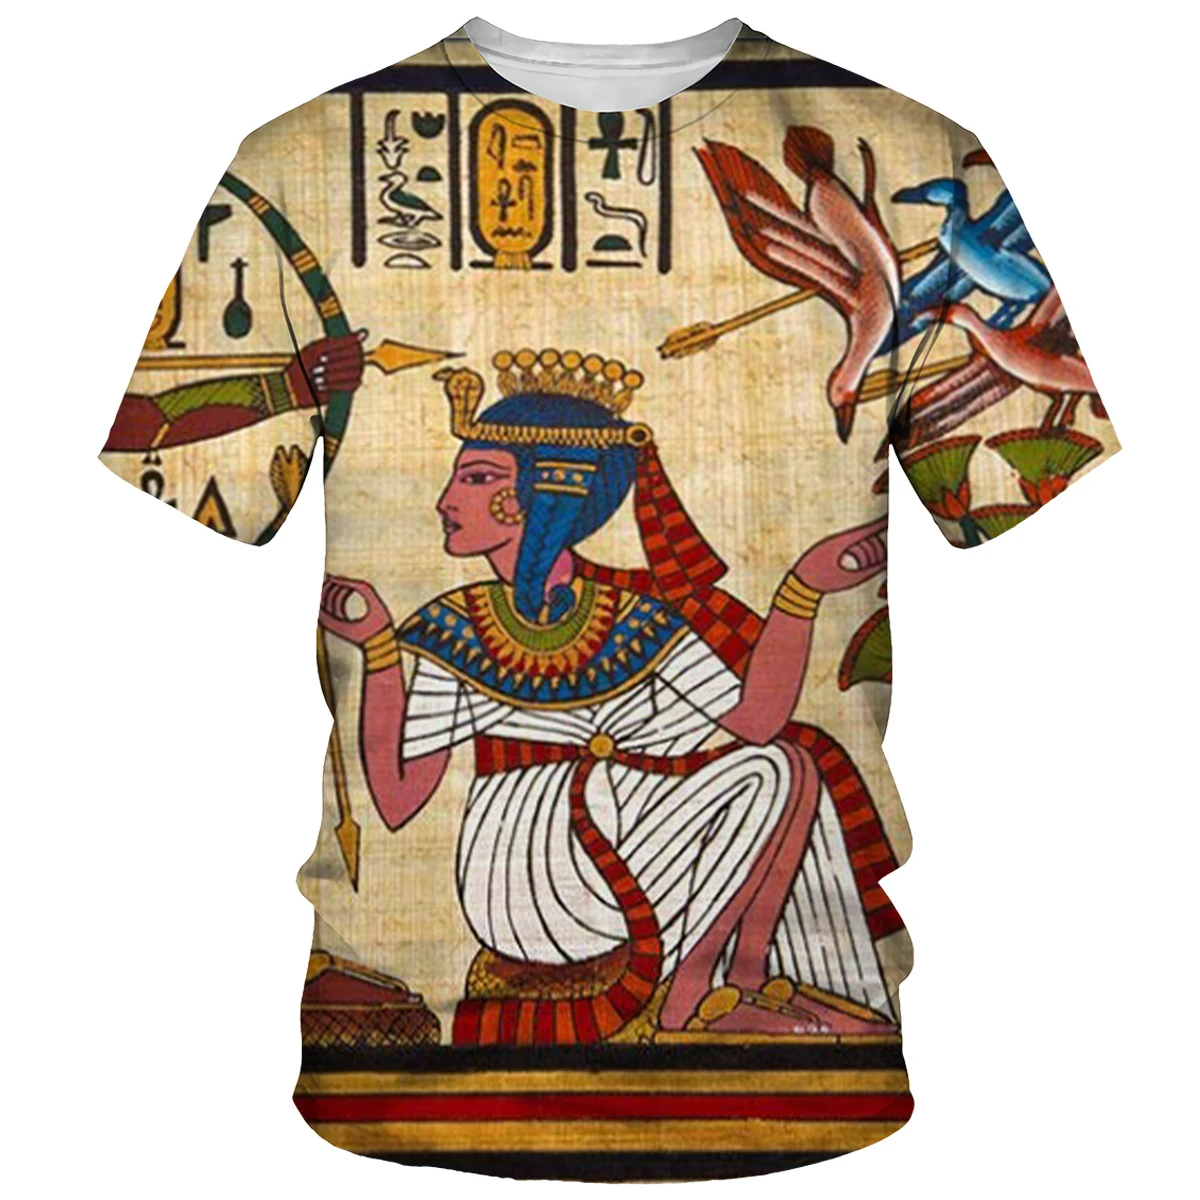 

Мужская футболка с рисунком древнего египетского Бога, Фараона, Анубиса, символов, 3D футболки с принтом, топы с коротким рукавом в стиле Хара...